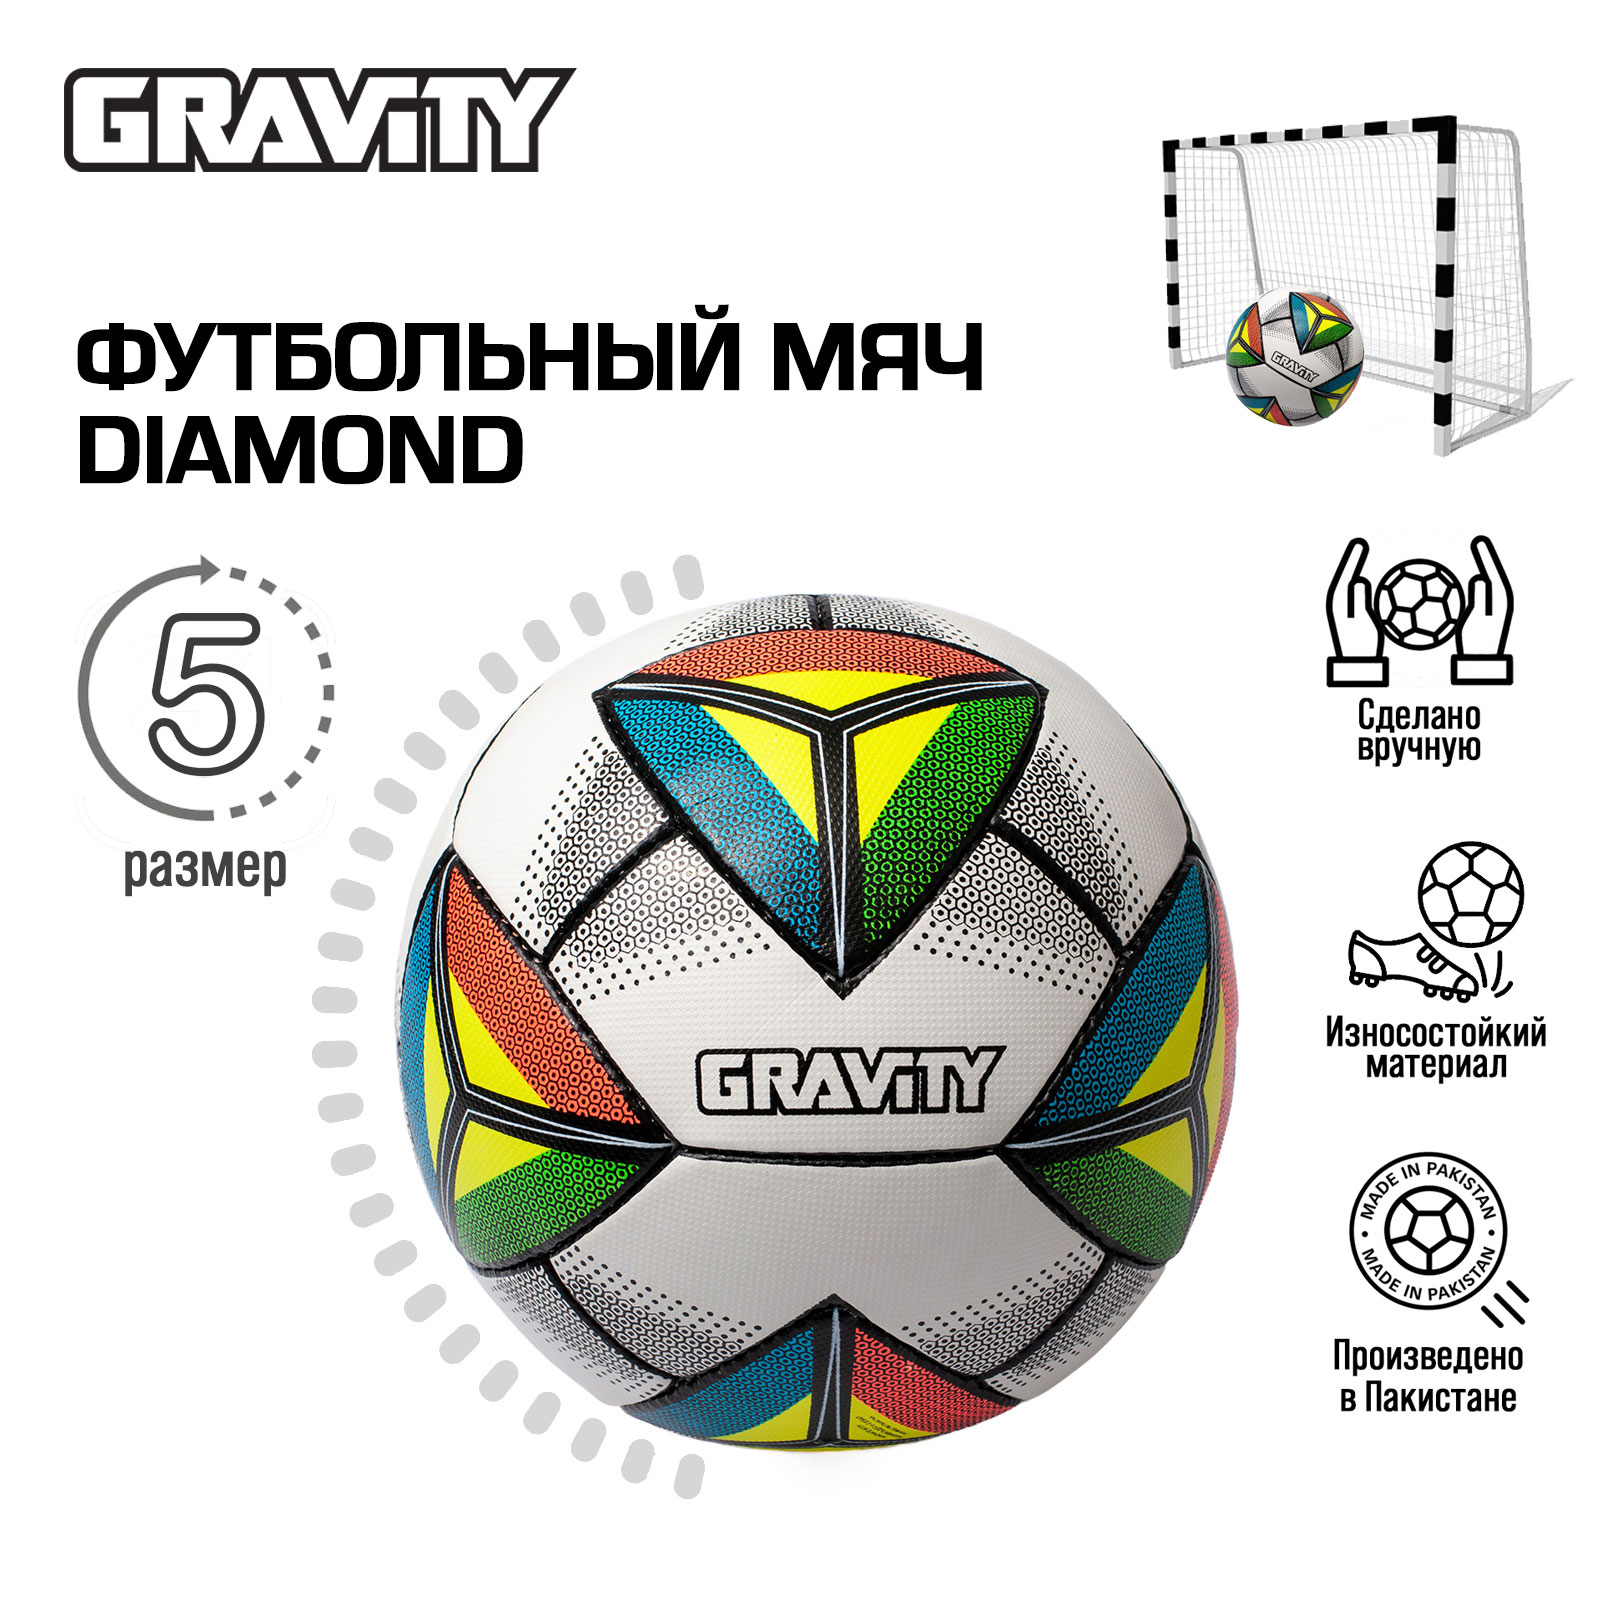 Футбольный мяч Gravity, ручная сшивка, DIAMOND